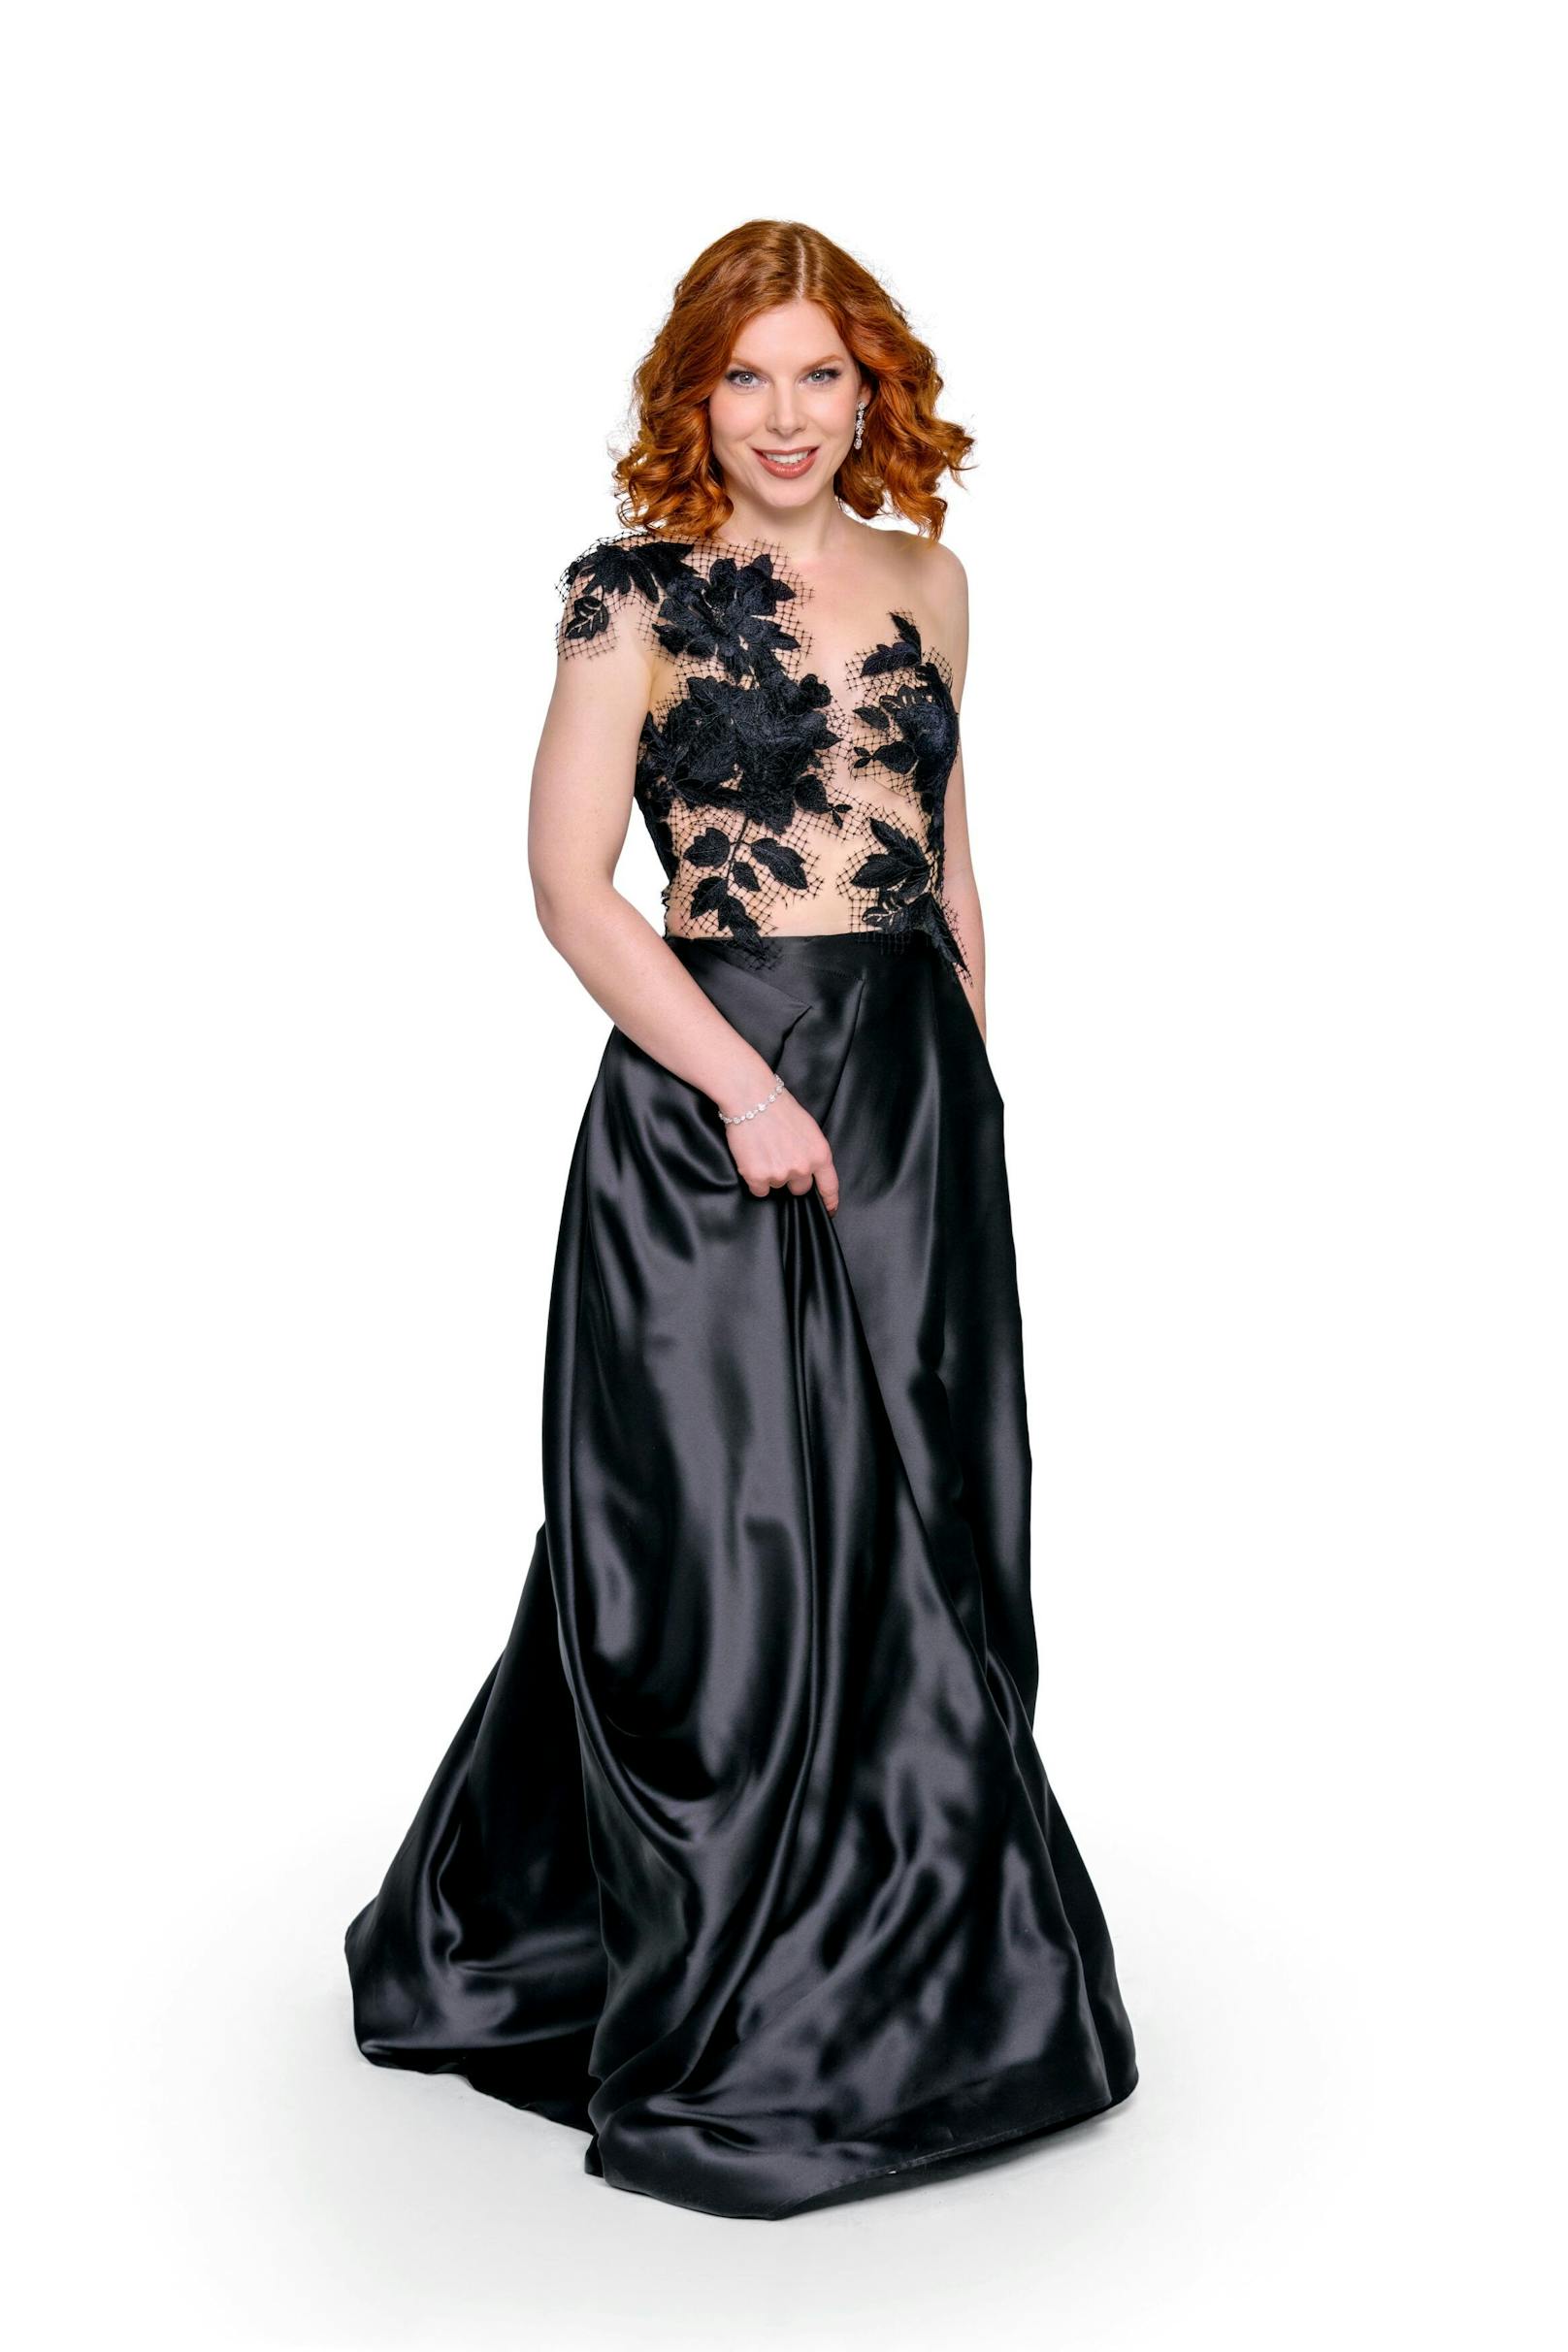 Teresa Vogl setzt für ihren Auftritt auf dem Ball der Bälle auf ein Kleid der österreichischen Designerin Michel Mayer.